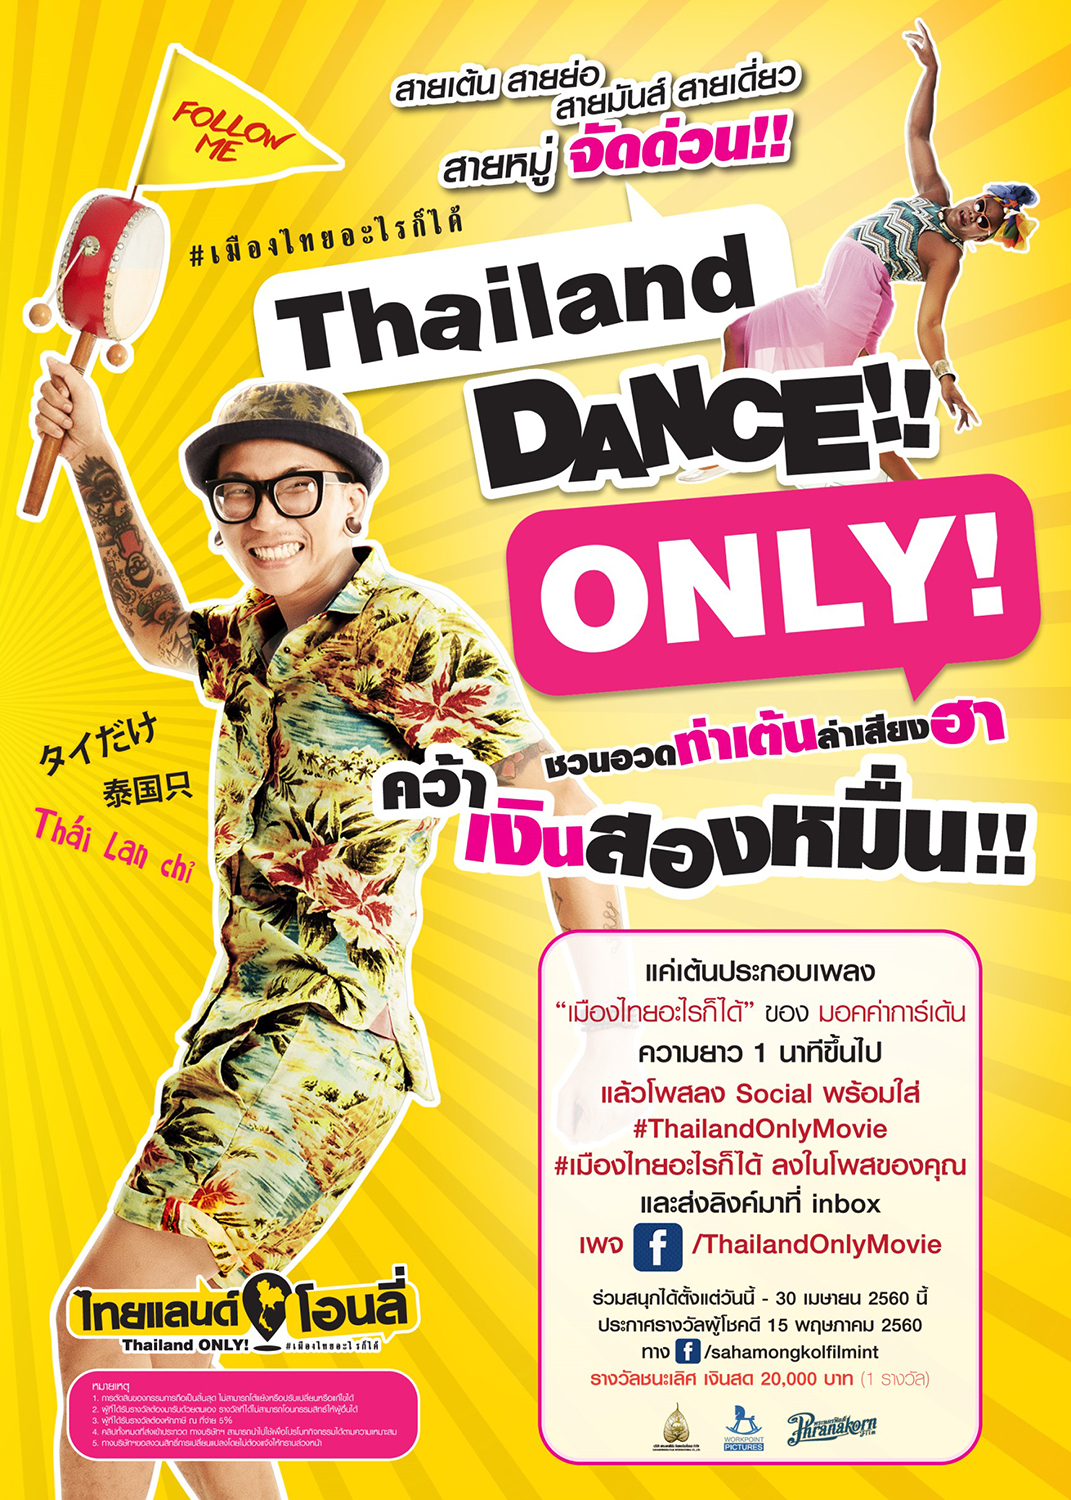 “ไทยแลนด์โอนลี่ #เมืองไทยอะไรก็ได้” ชวนอวดท่าเต้น ล่าเสียงฮา คว้าเงินสองหมื่น!!! กับ “Thailand Dance Only!”